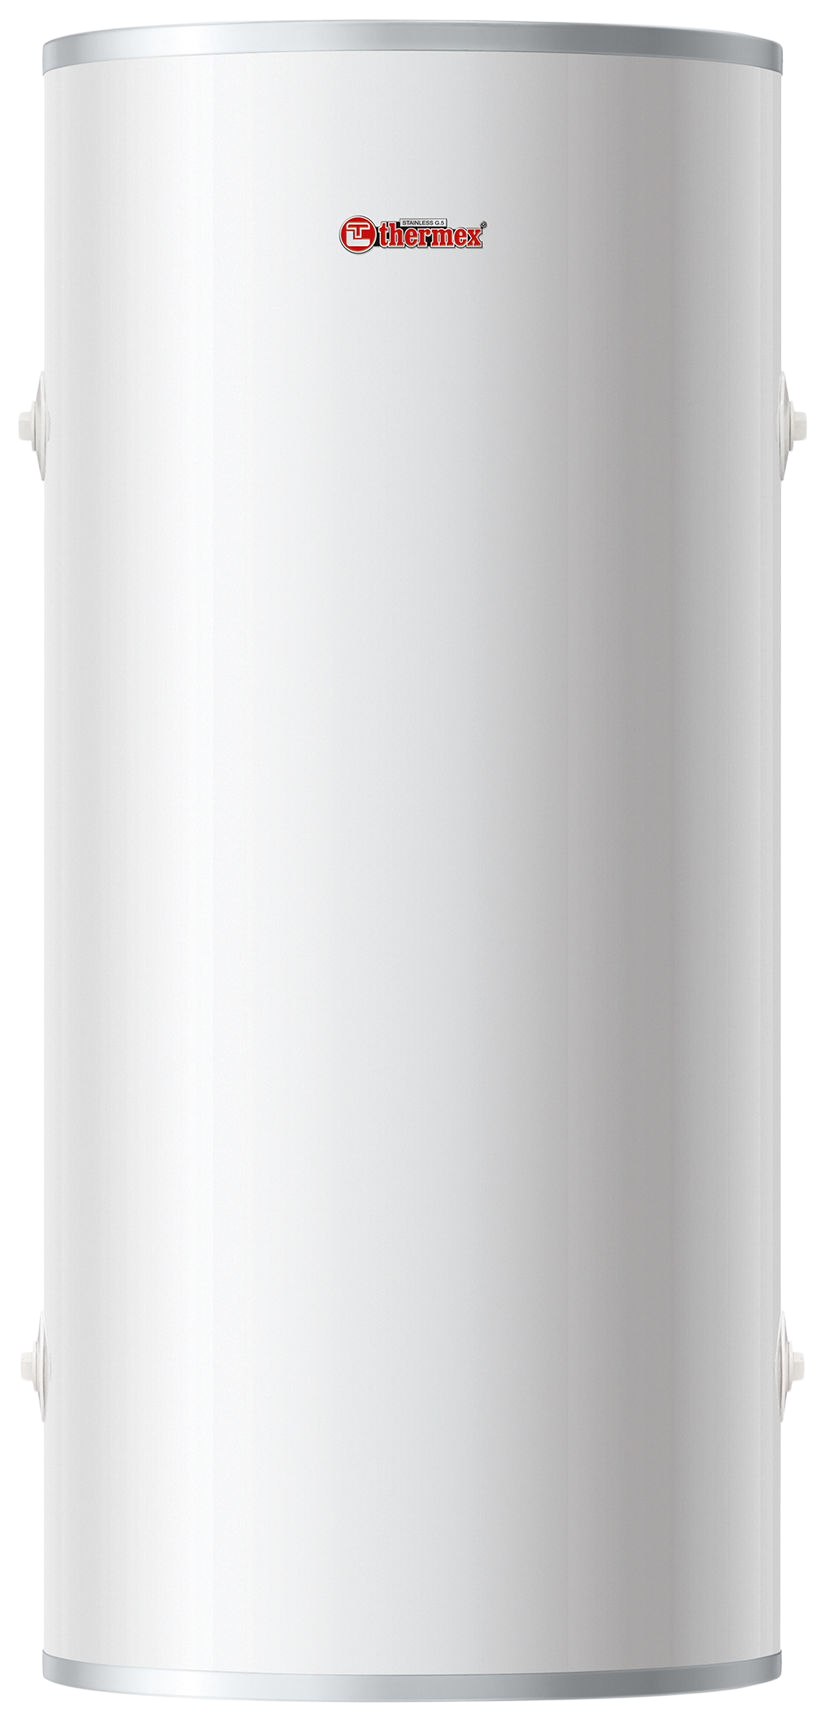 Водонагреватель накопительный THERMEX IR 200 V white кулер ecotronic k21 lf white холодильник 16 литров